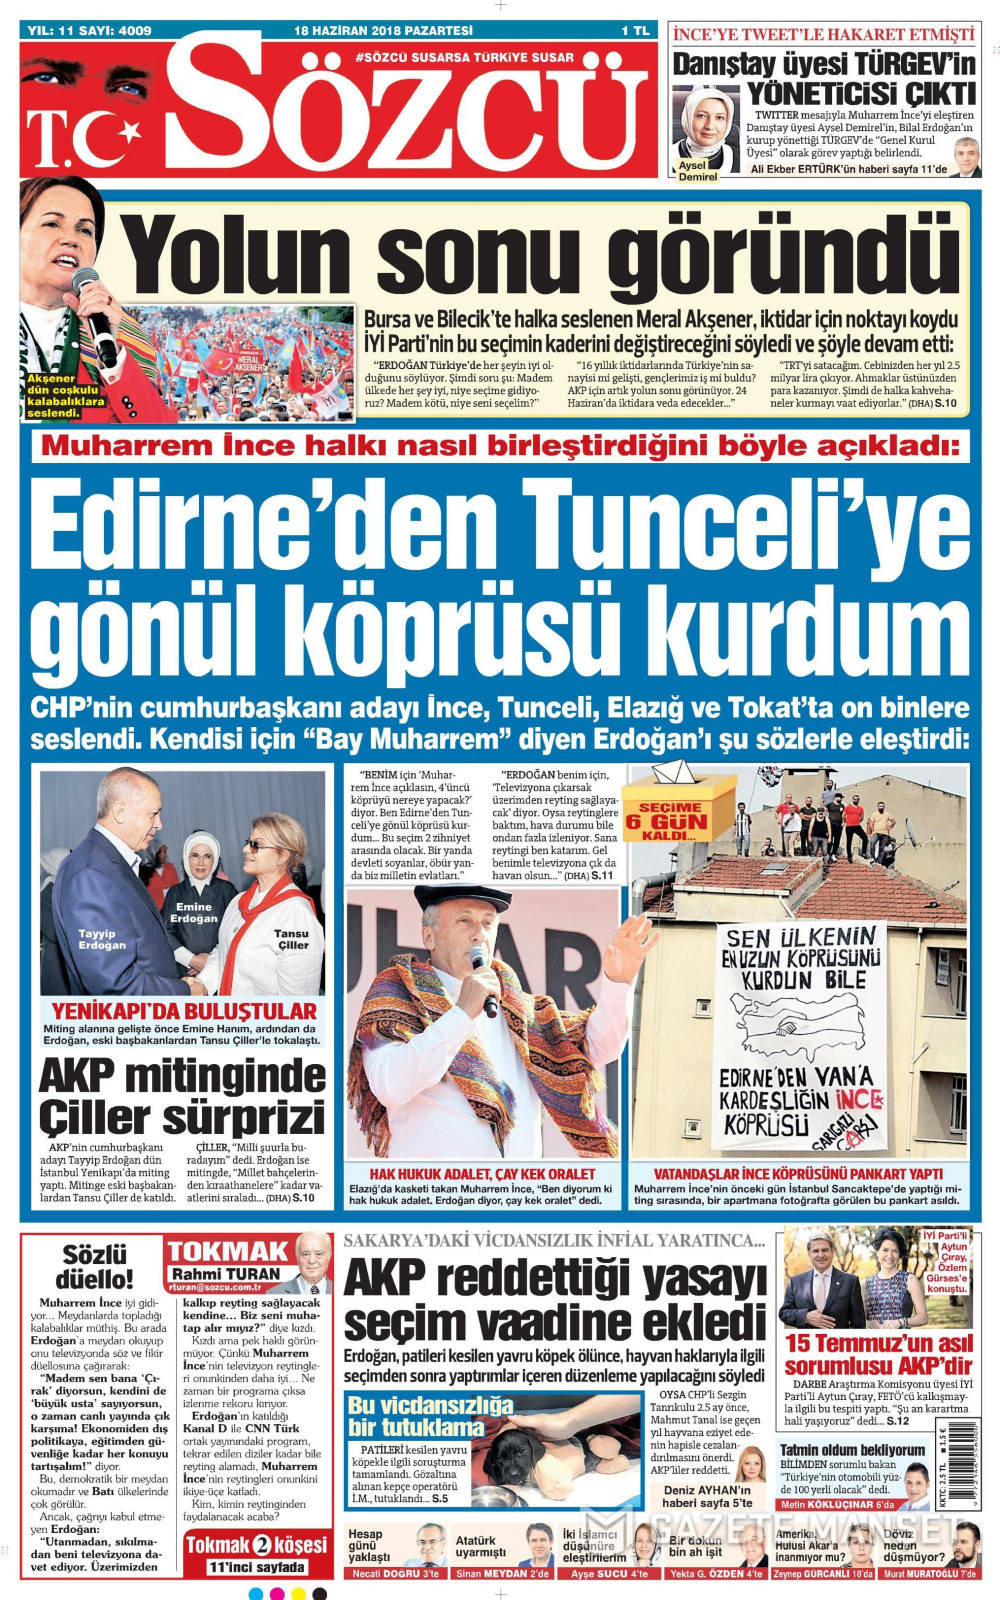 Gazete manşetleri 18 Haziran 2018 Hürriyet - Sözcü - Habertürk